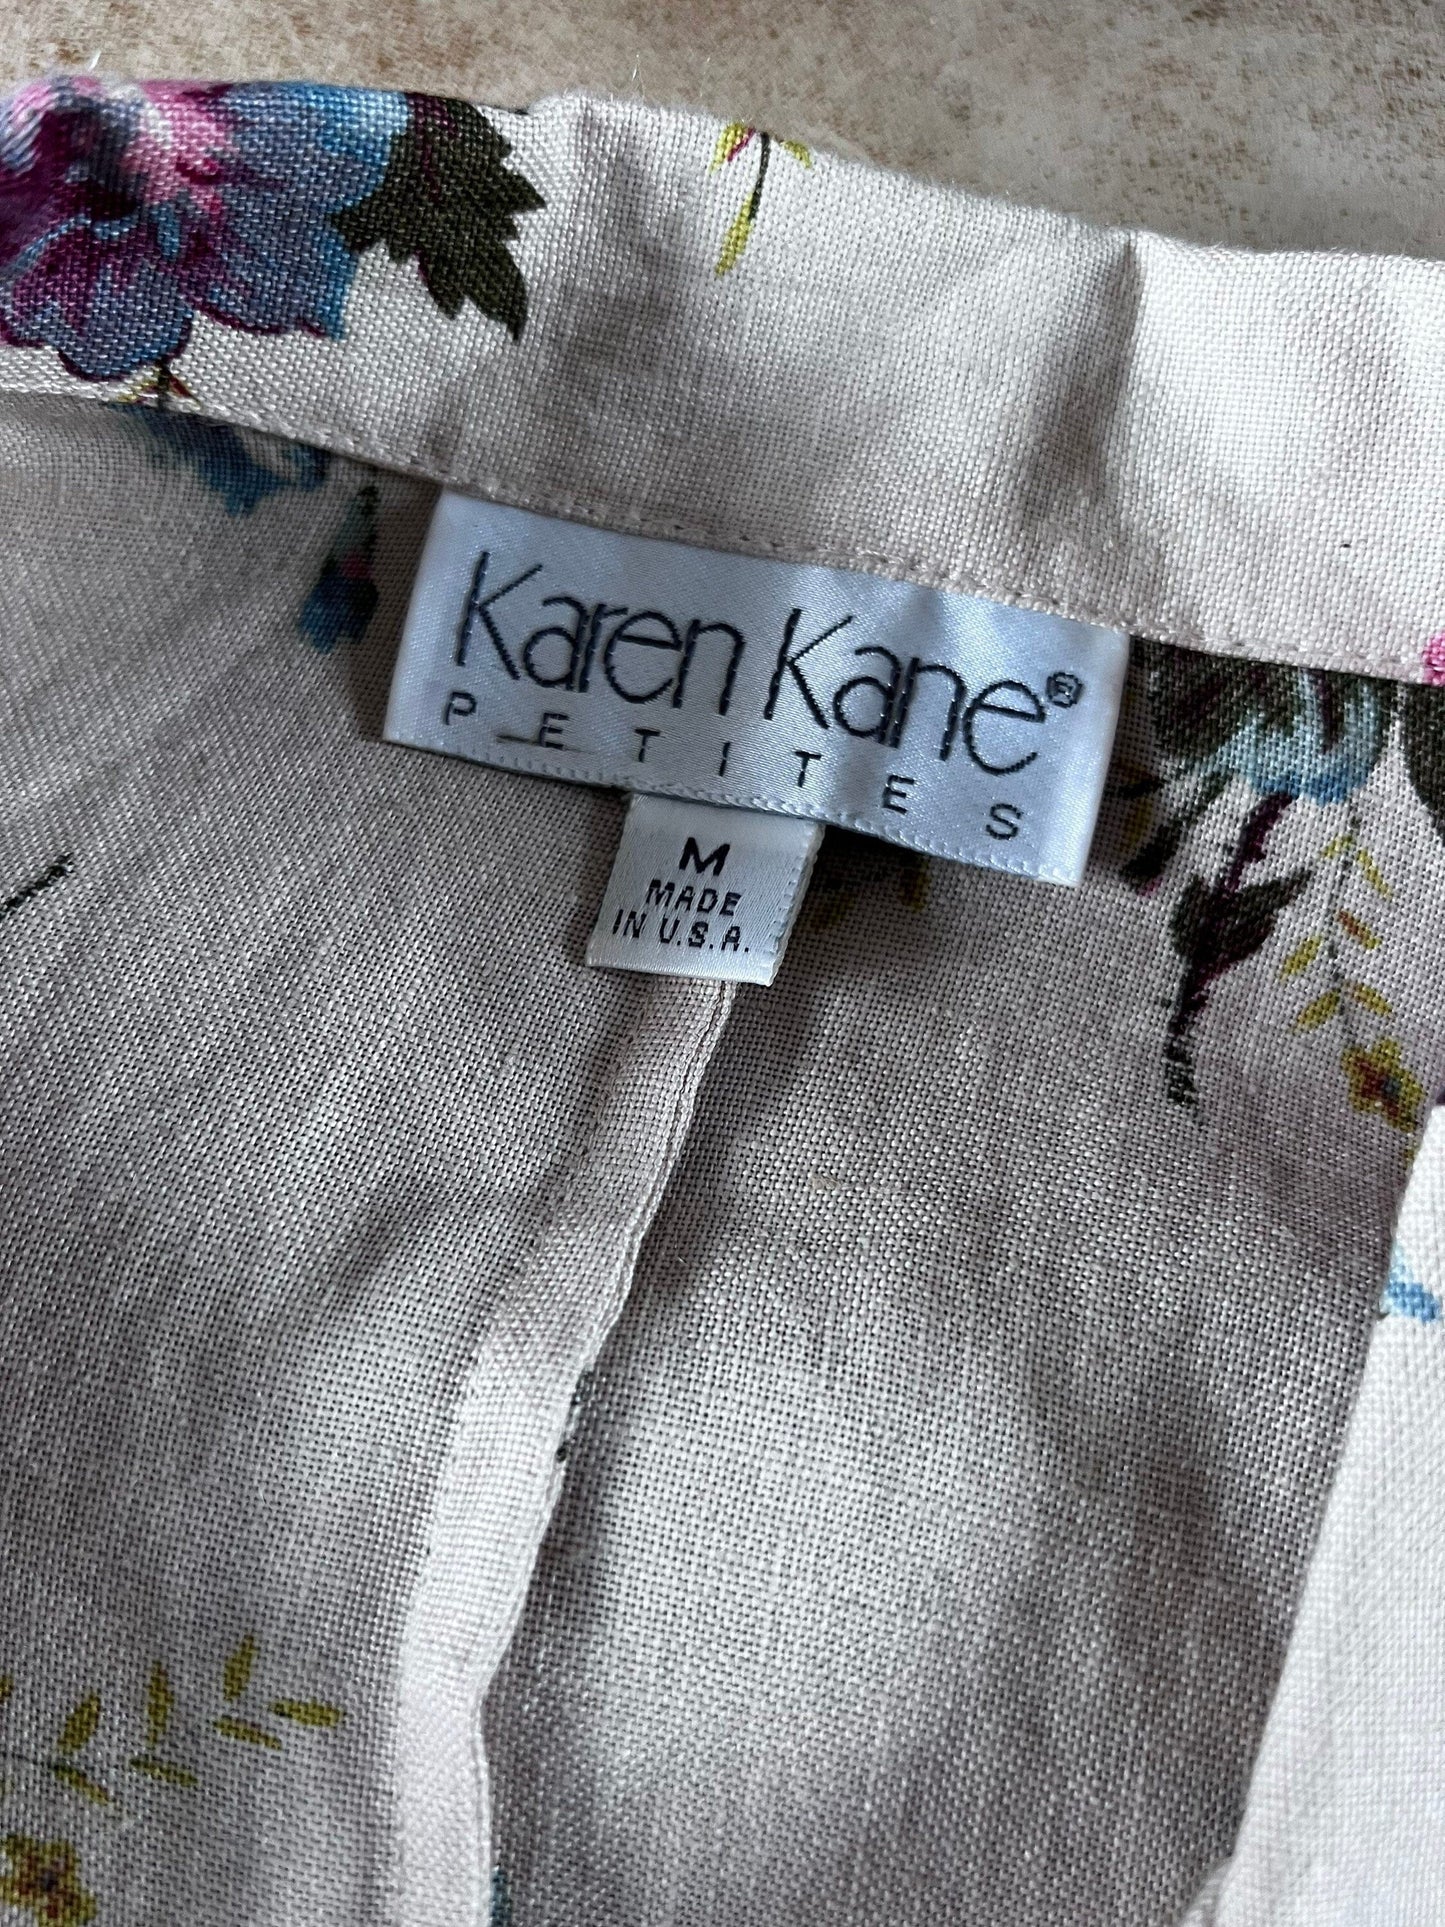 Vintage Cream Linen Floral Blazer 90s Karen Kane Cream Linen with Size M UK14-16